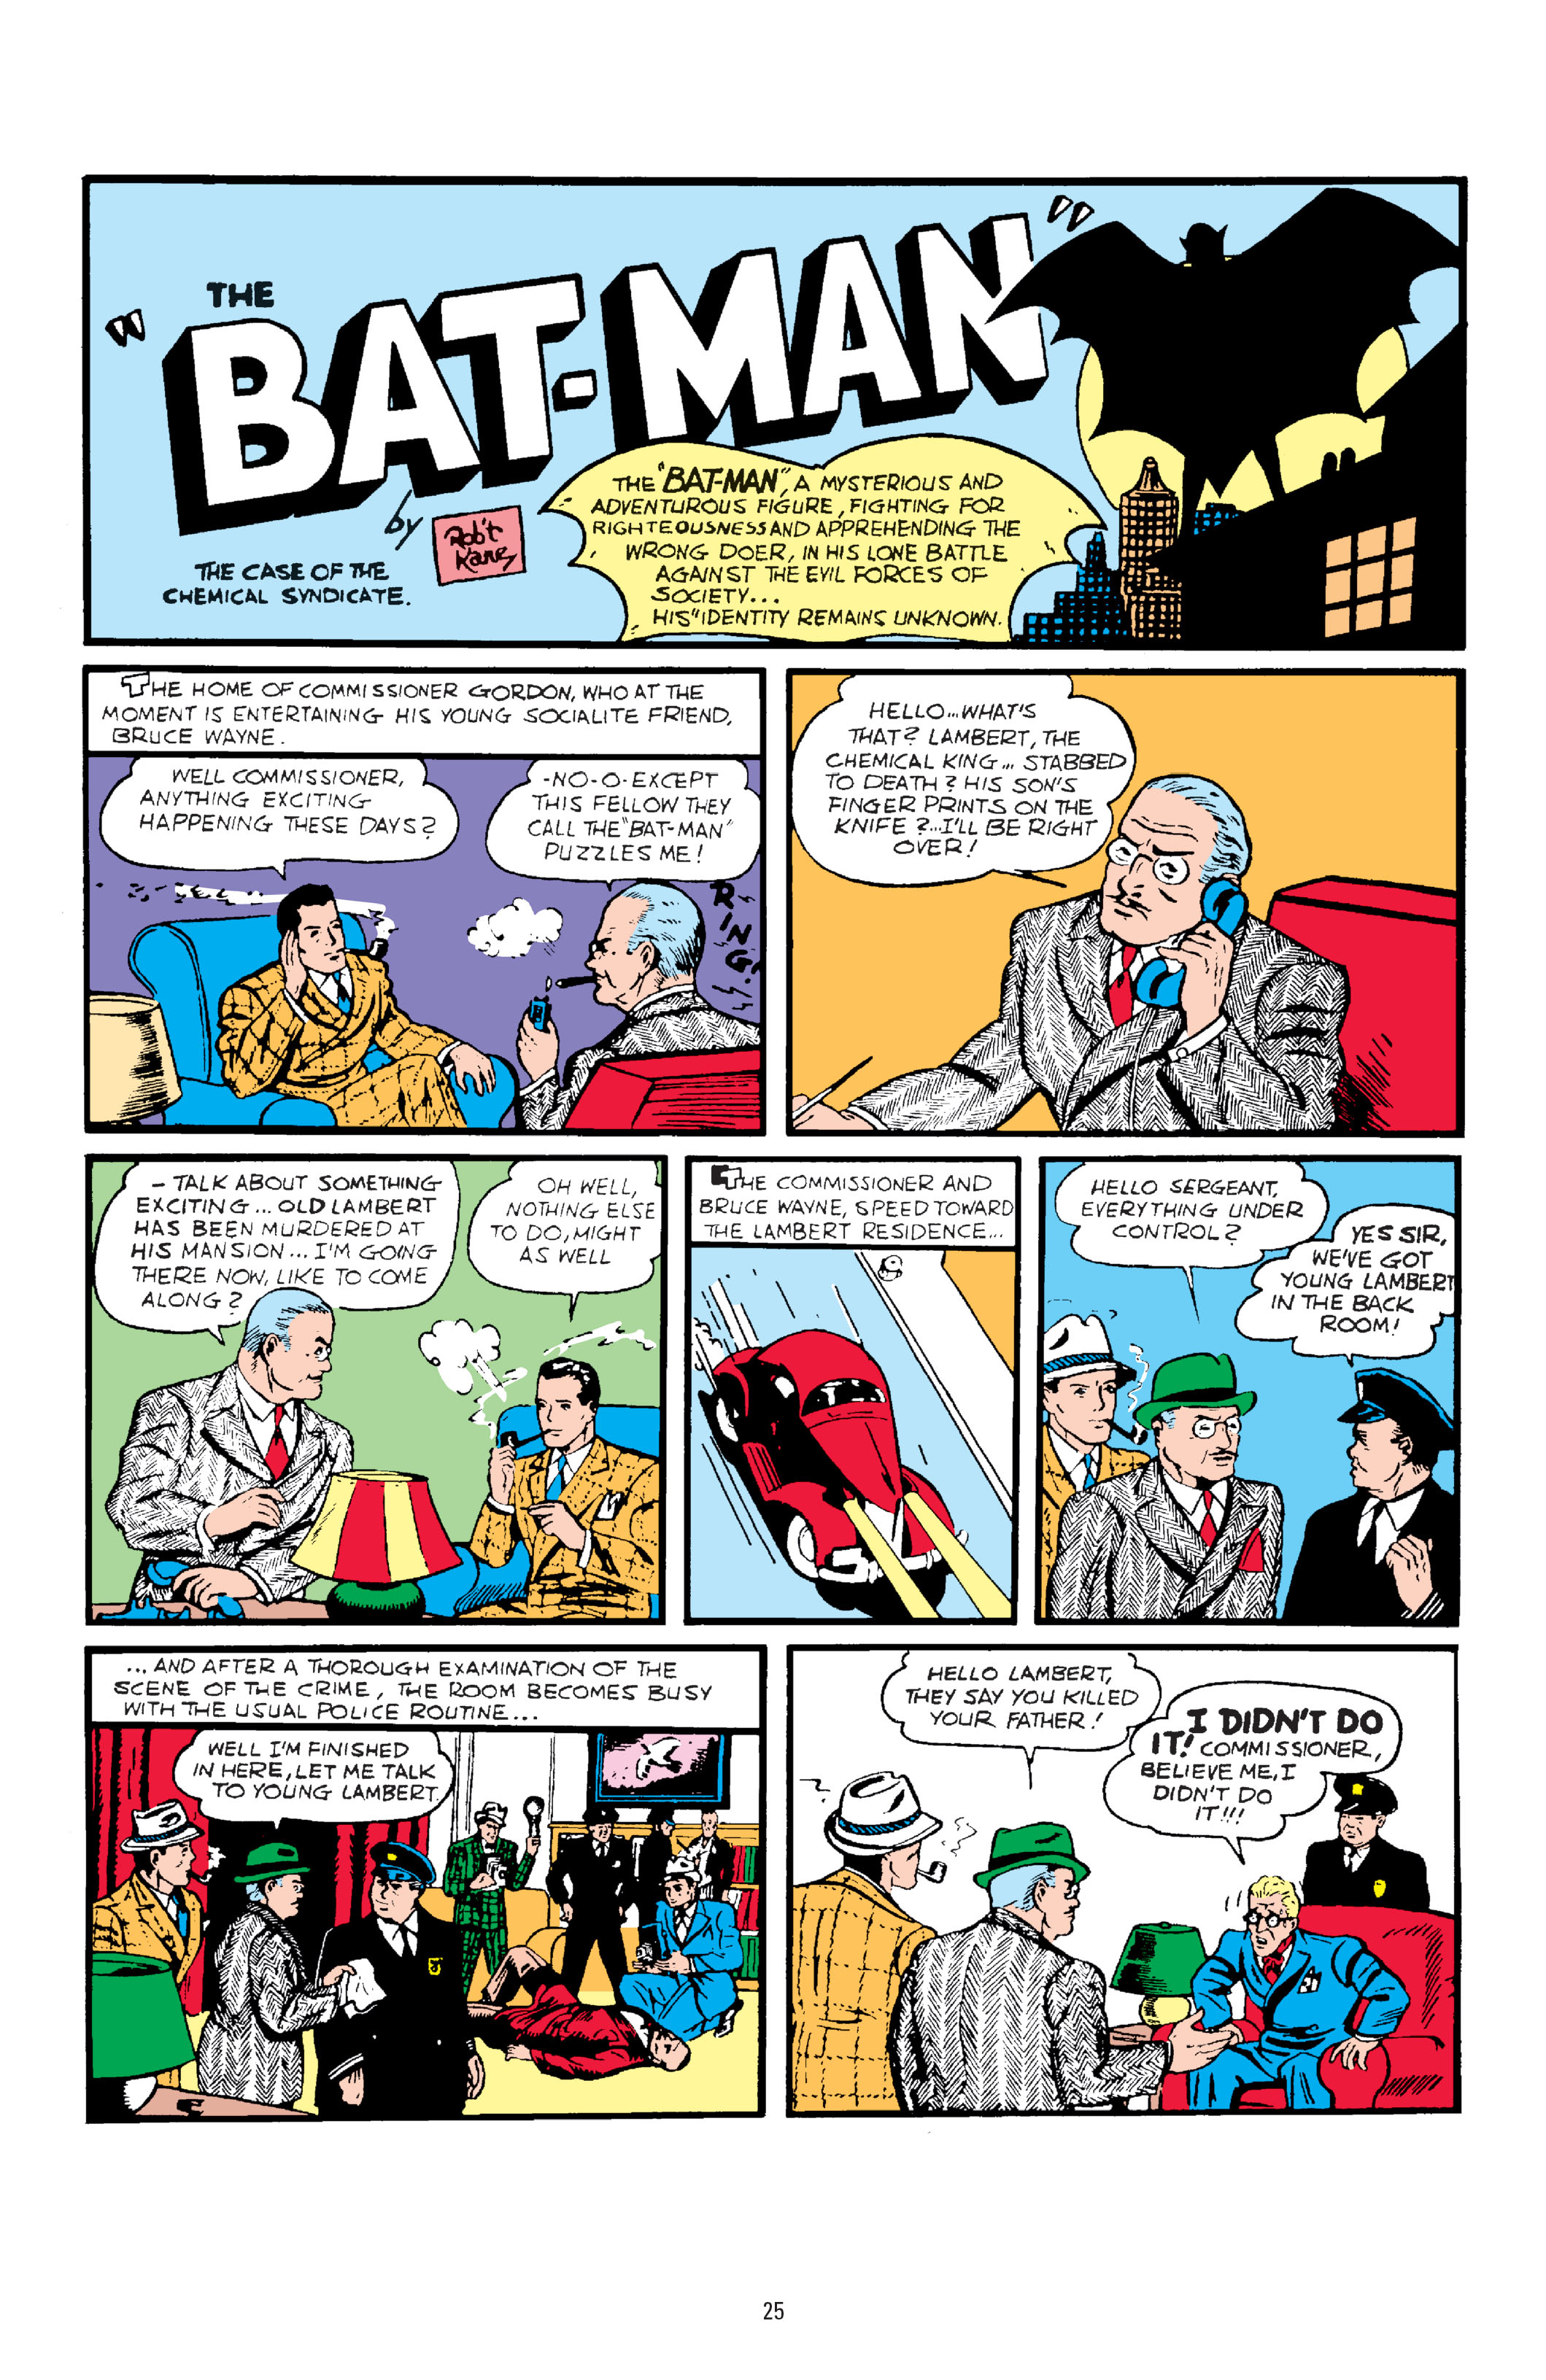 Читать комиксы на английском. Detective Comics #27 (1939). Комиксы на английском. Иностранный язык в комиксах. Популярные английские комиксы.